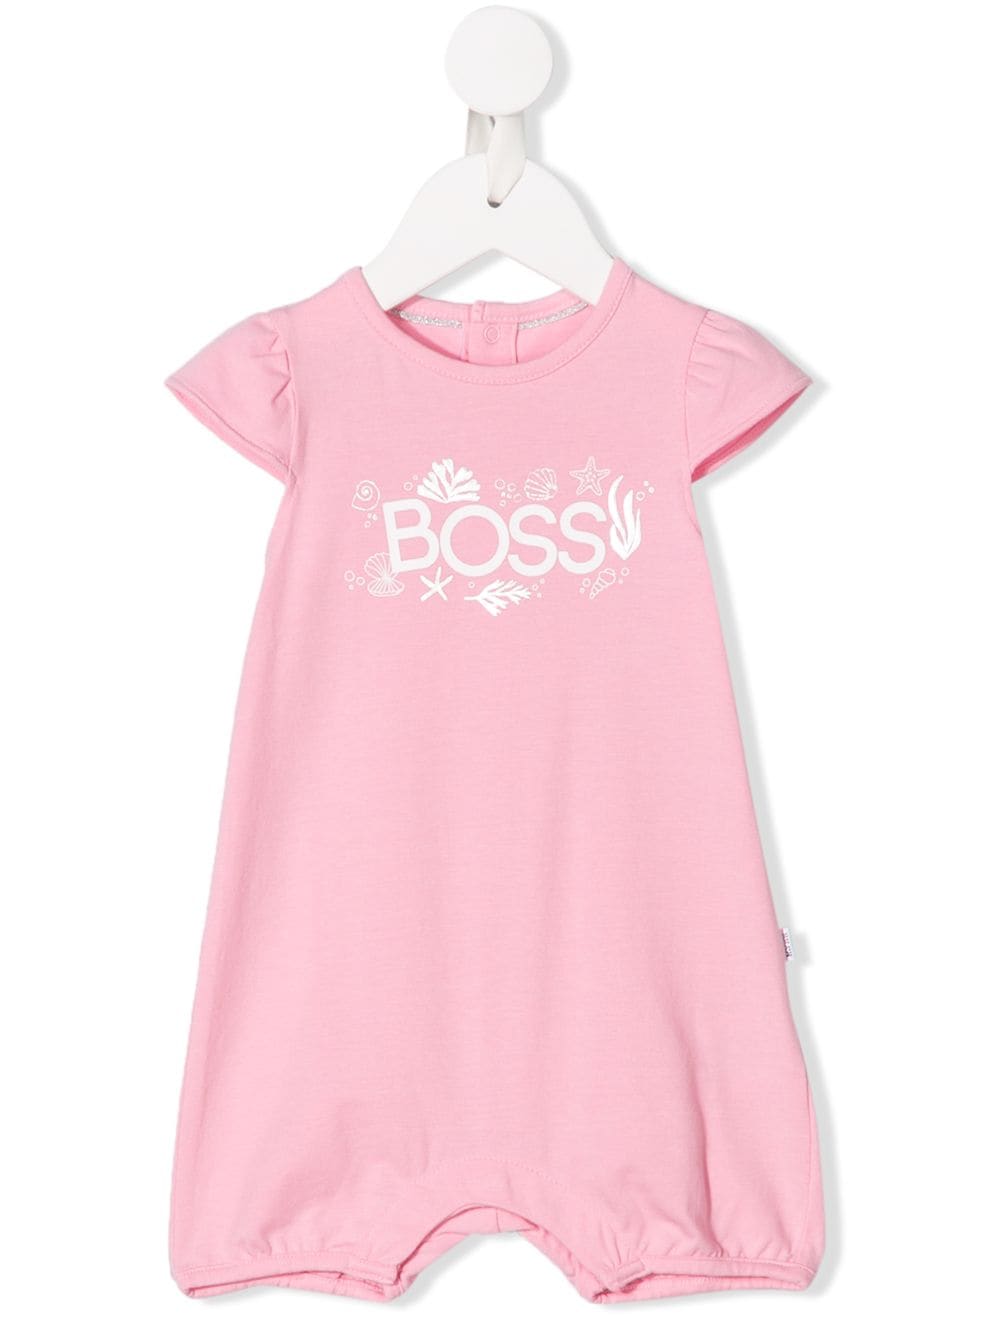 buy \u003e hugo boss baby girl sale, Up to 